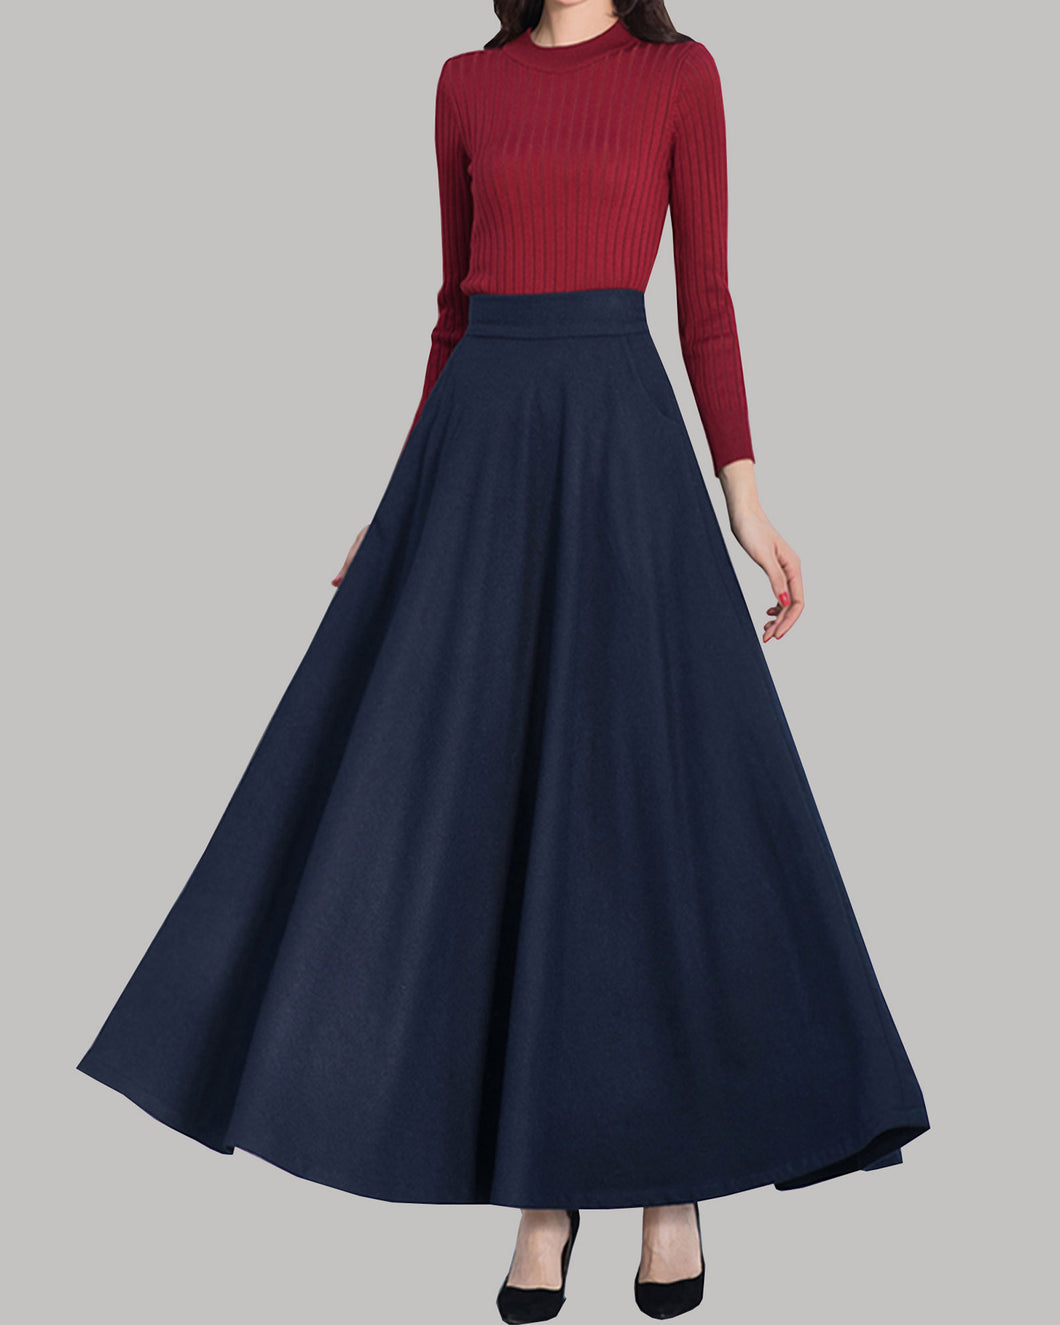 Wool skirt, Winter skirt, black skirt, long wool skirt, vintage skirt, high waist skirt, wool maxi skirt, elastic waist skirt Q0015